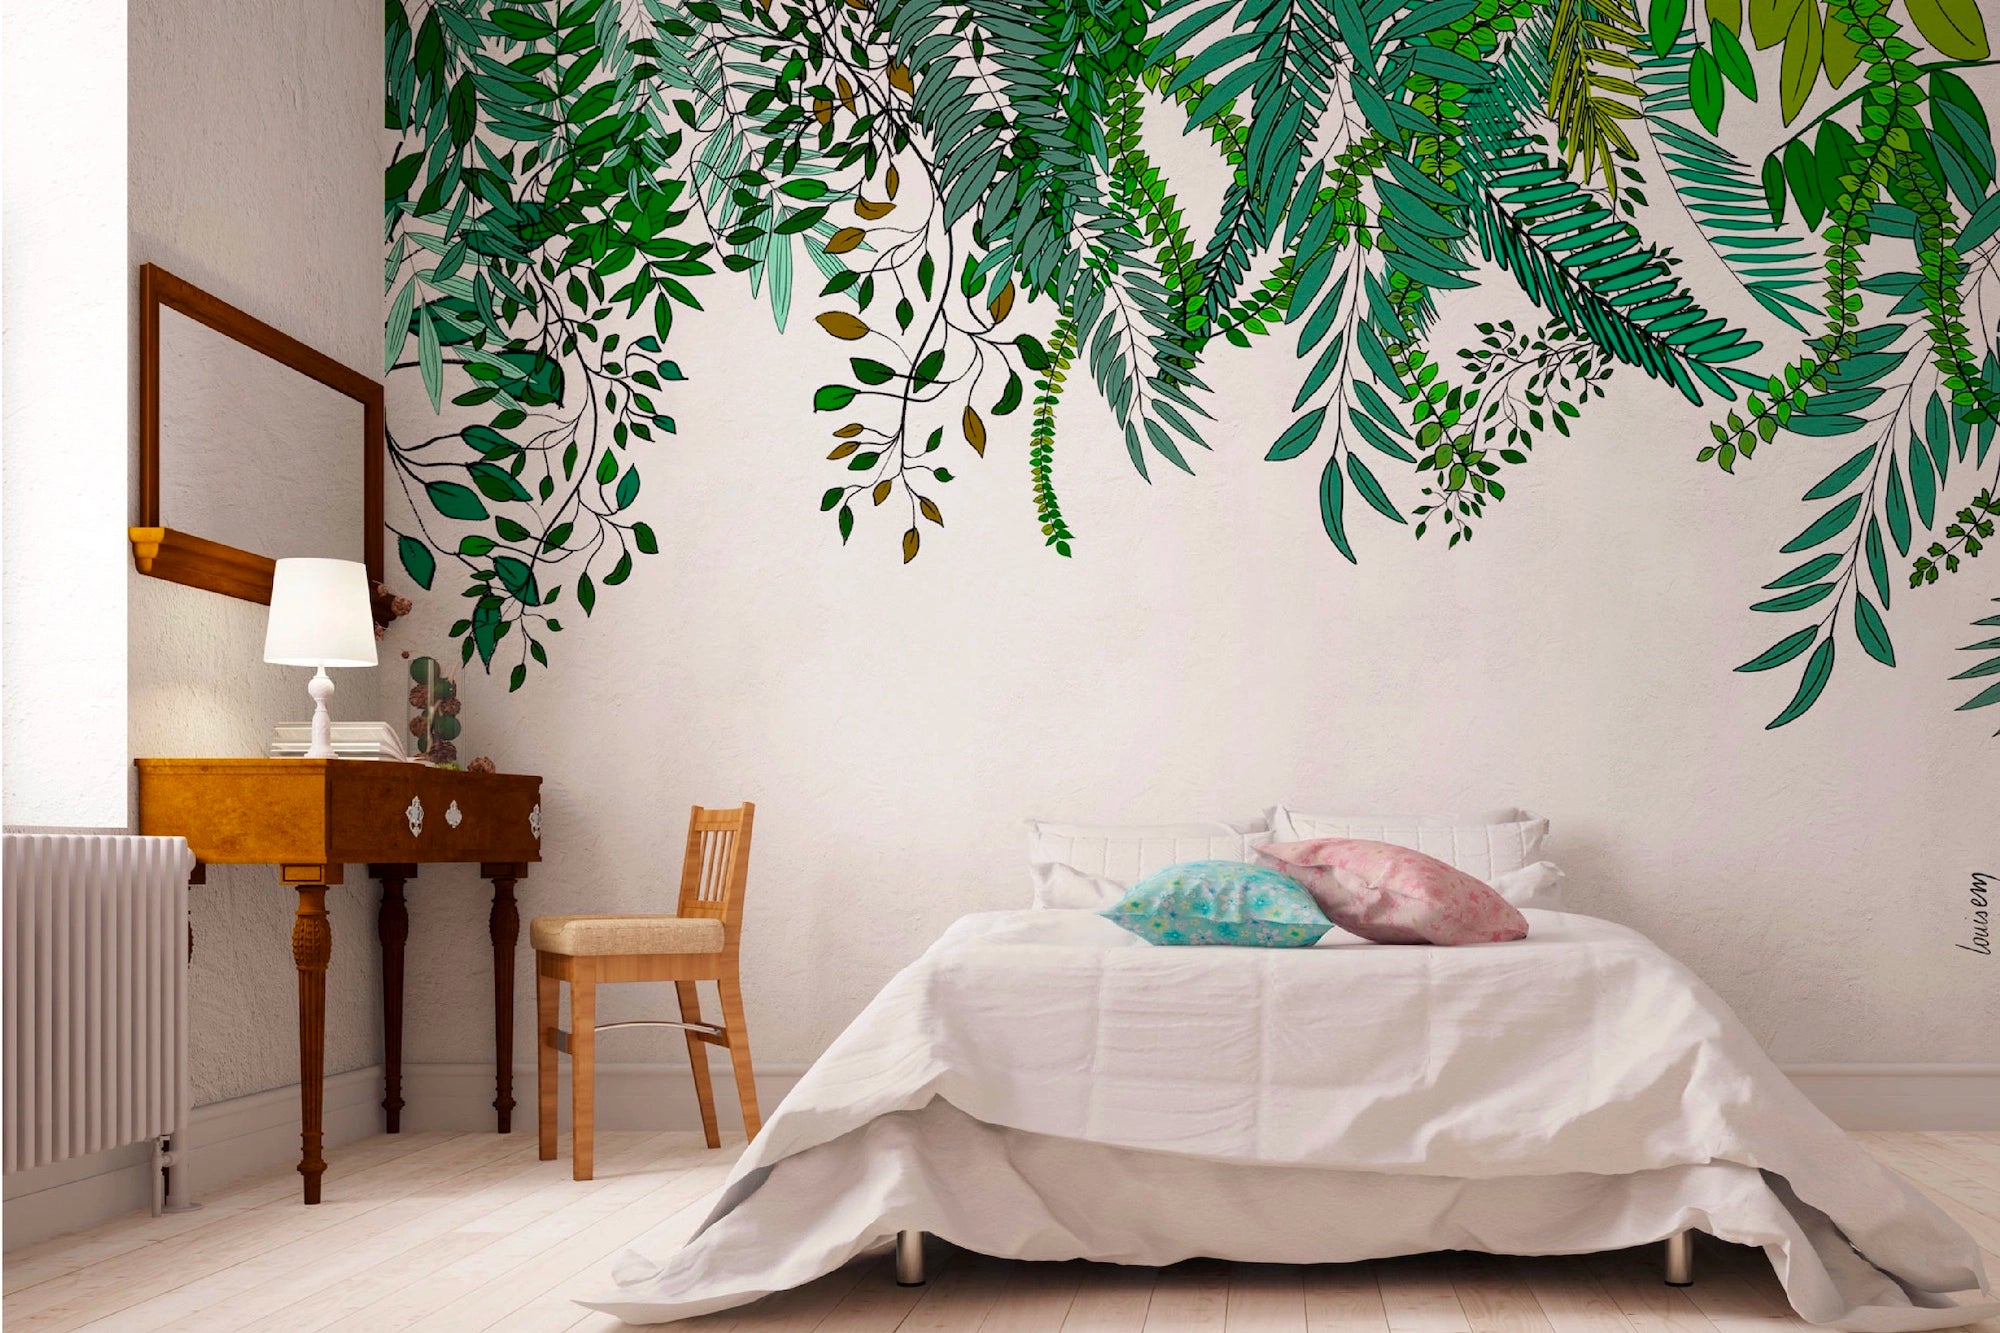 Papier peint avec motifs de plantes grimpantes vertes en floraison printanière, apportant une ambiance naturelle et rafraîchissante à l'espace.